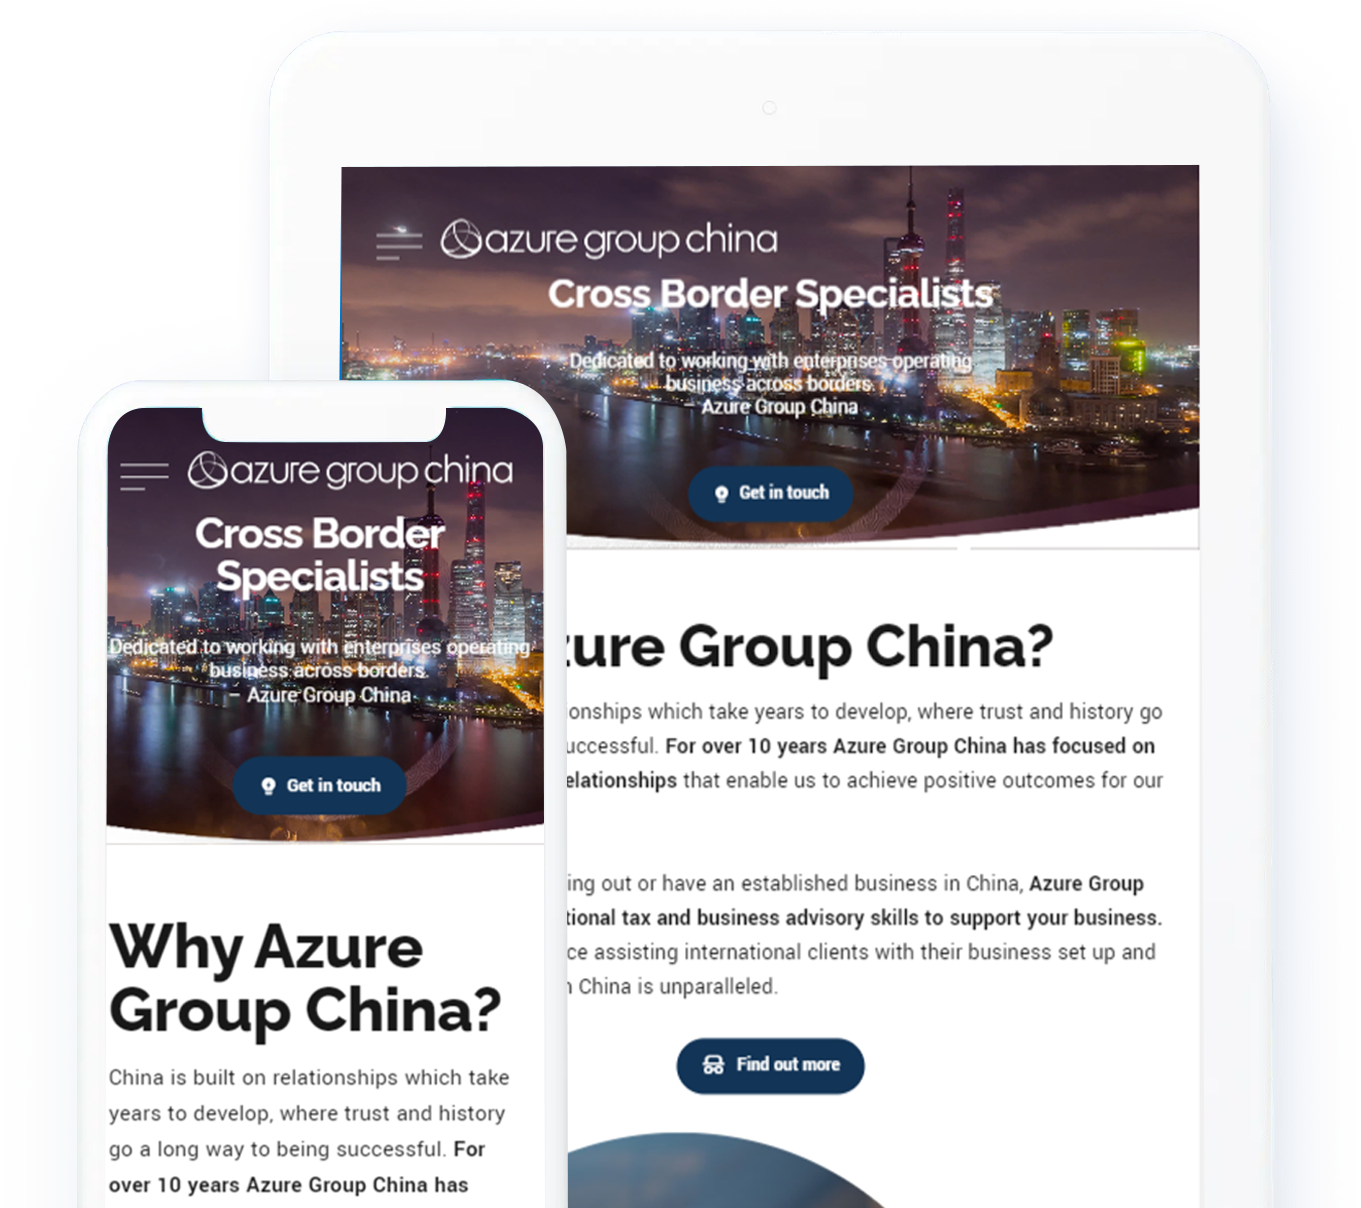 Azure Group China